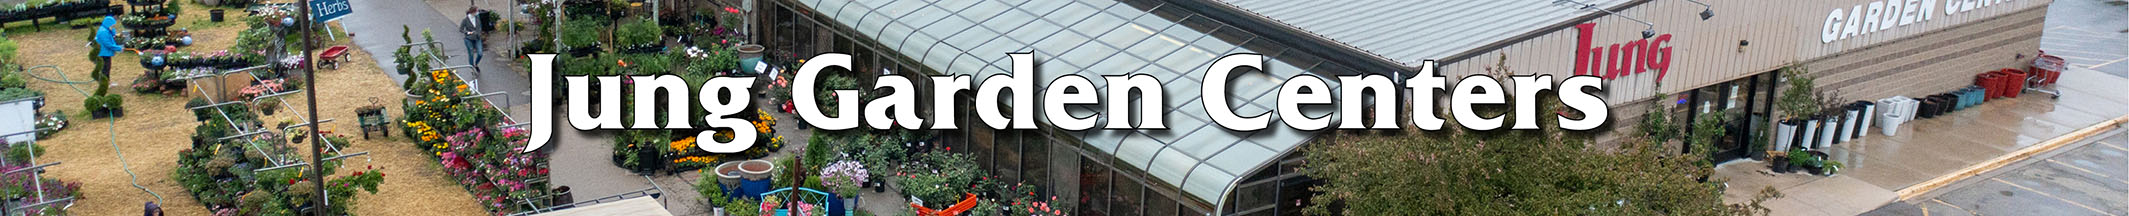 Wisconsin Garden Centers